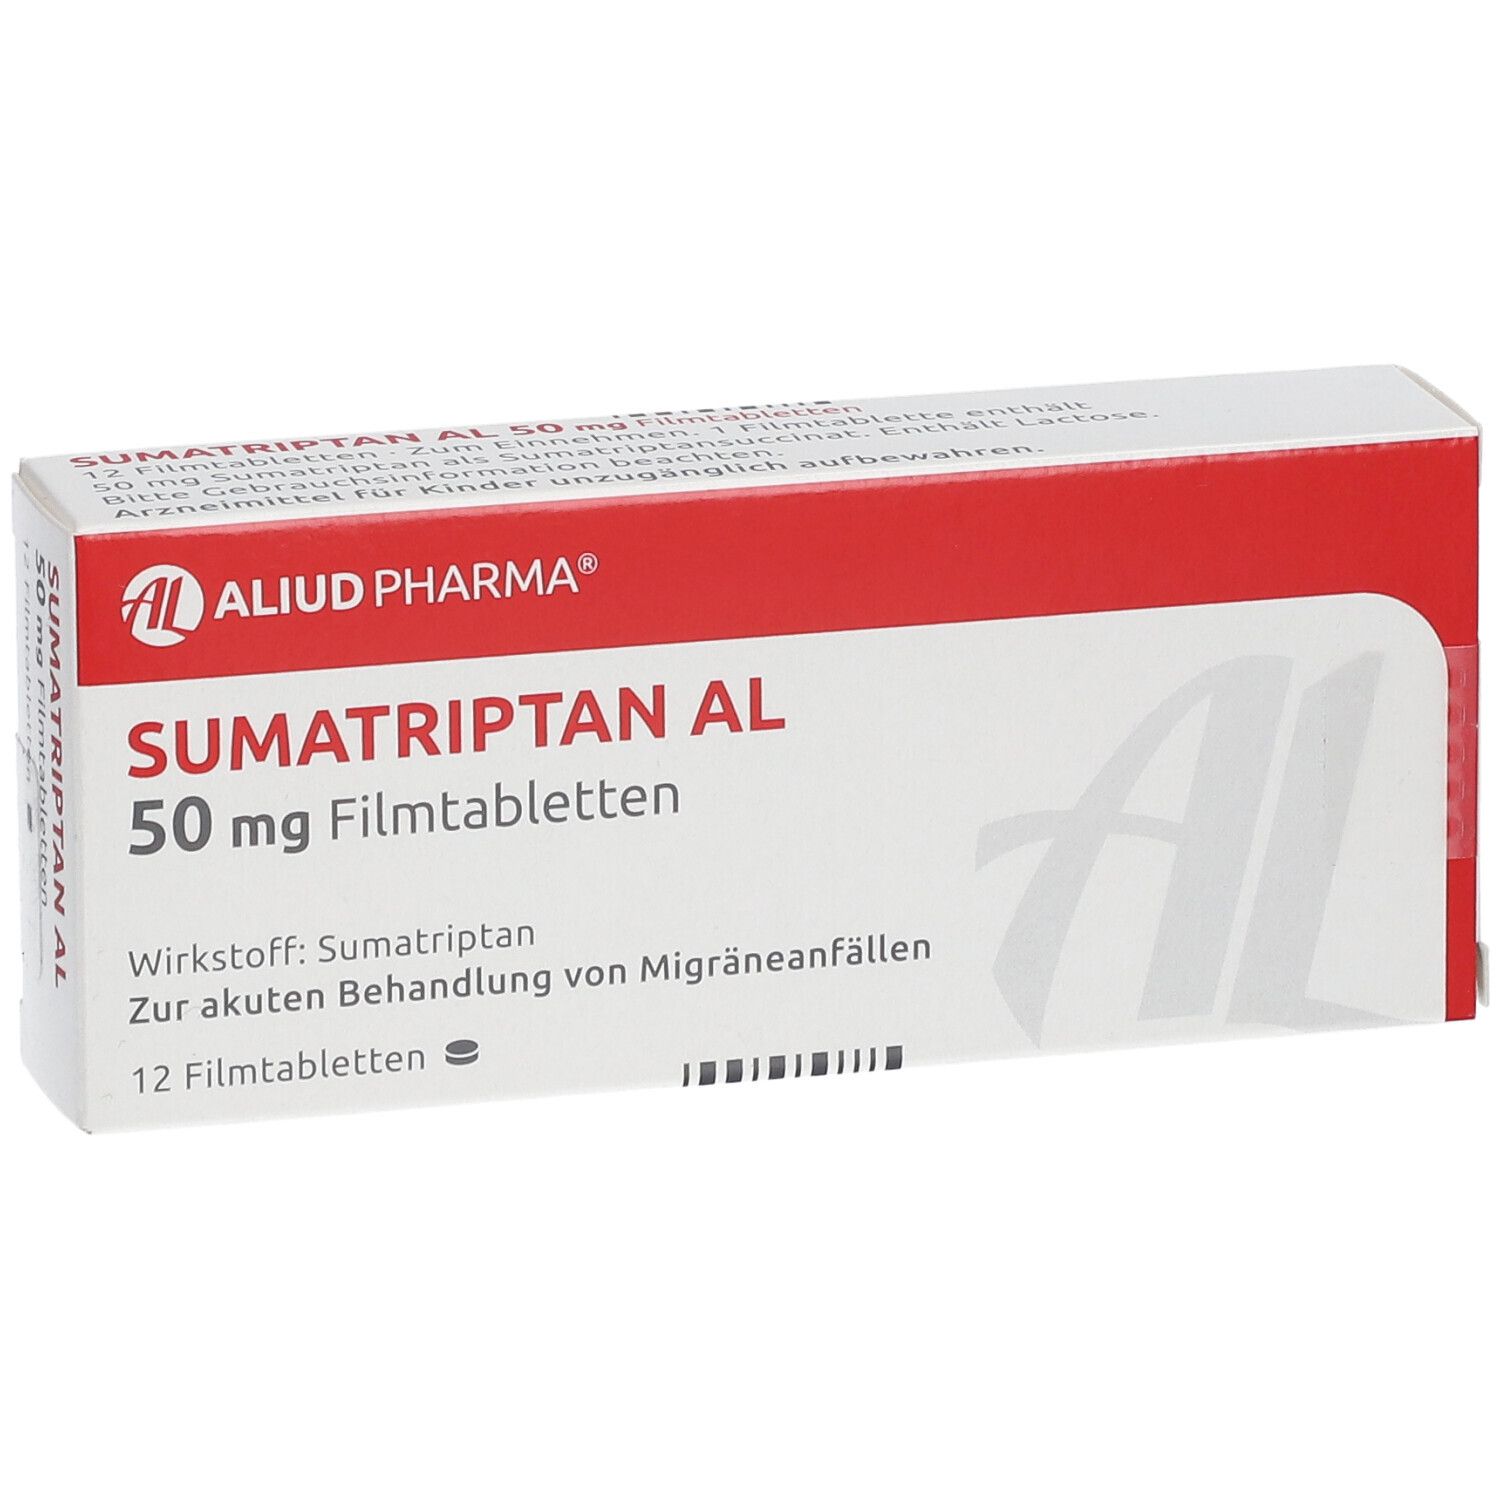 Sumatriptan AL 50 mg